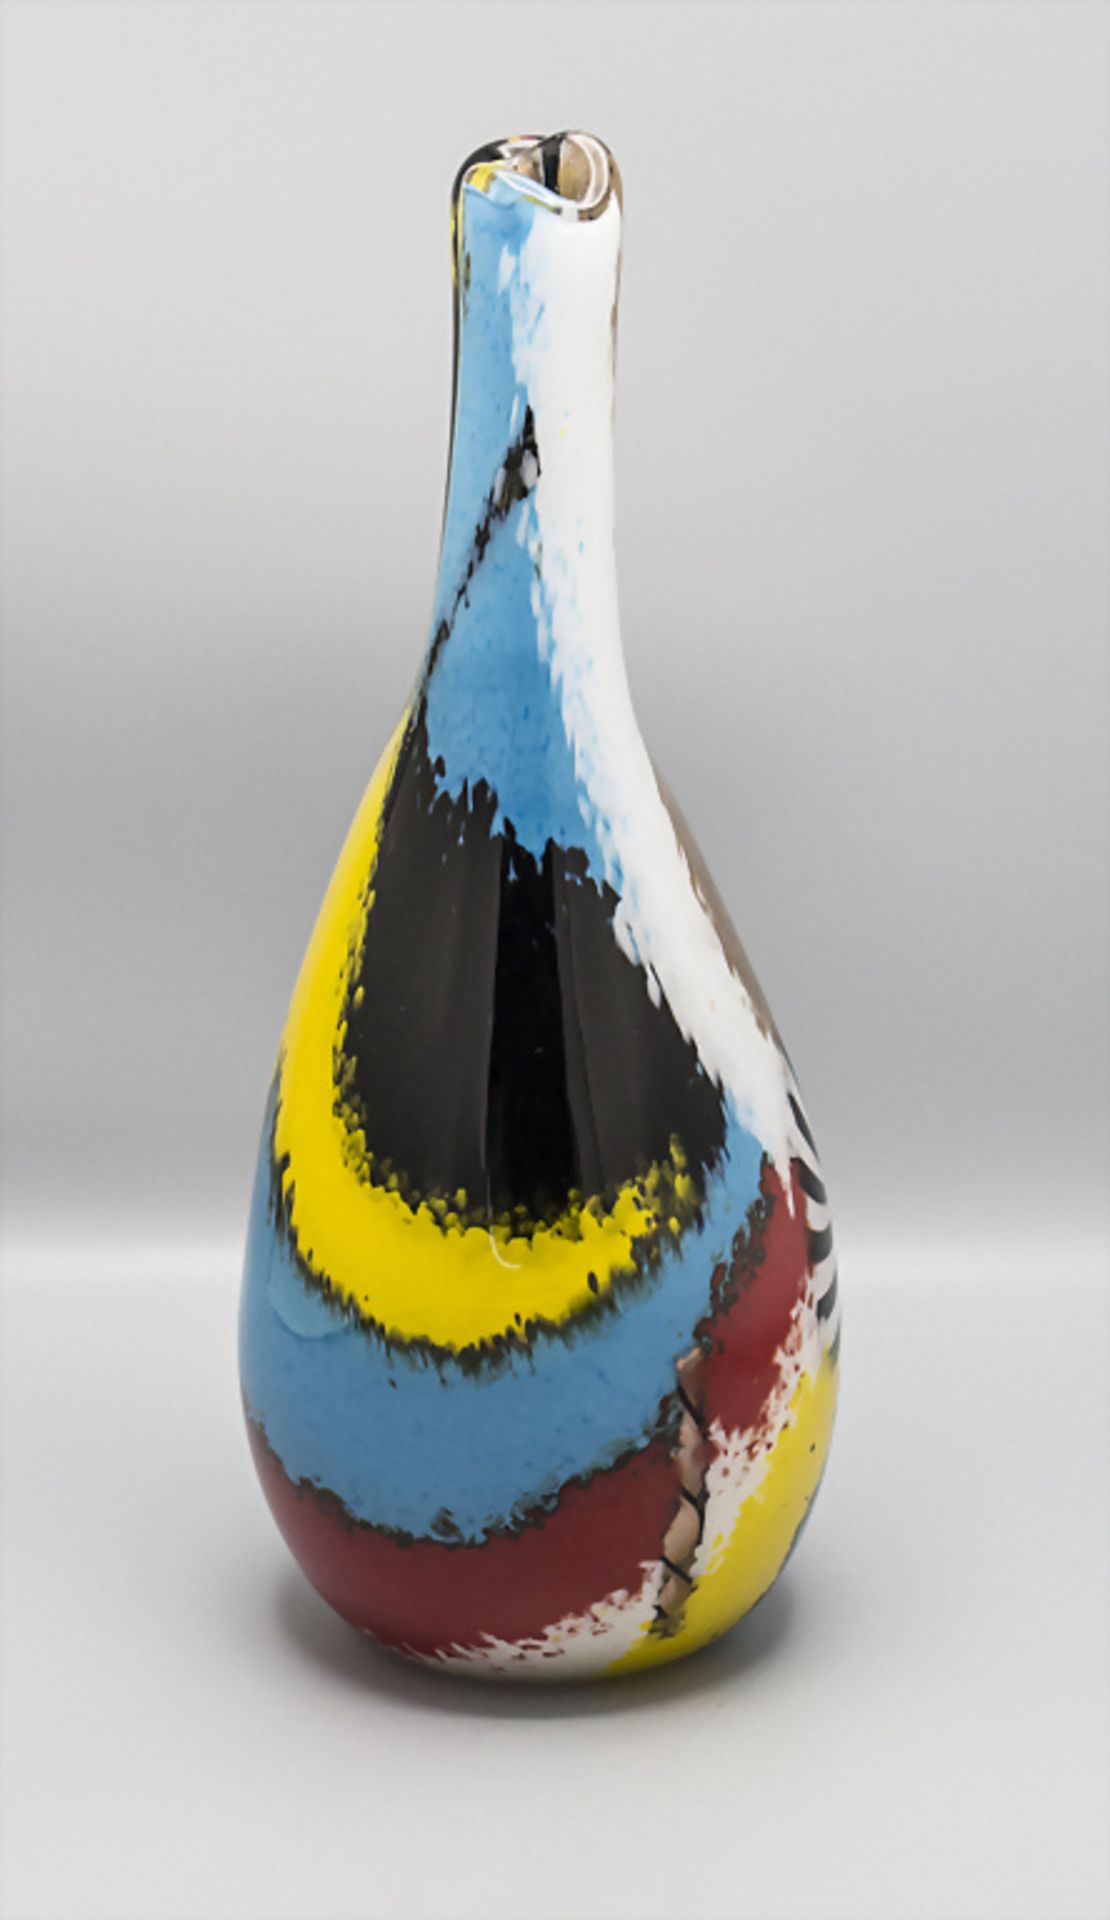 Doppelhalsvase / A double neck vase, Serie 'Oriente Salomone', Dino Martens, Murano, 1950 - Bild 3 aus 5